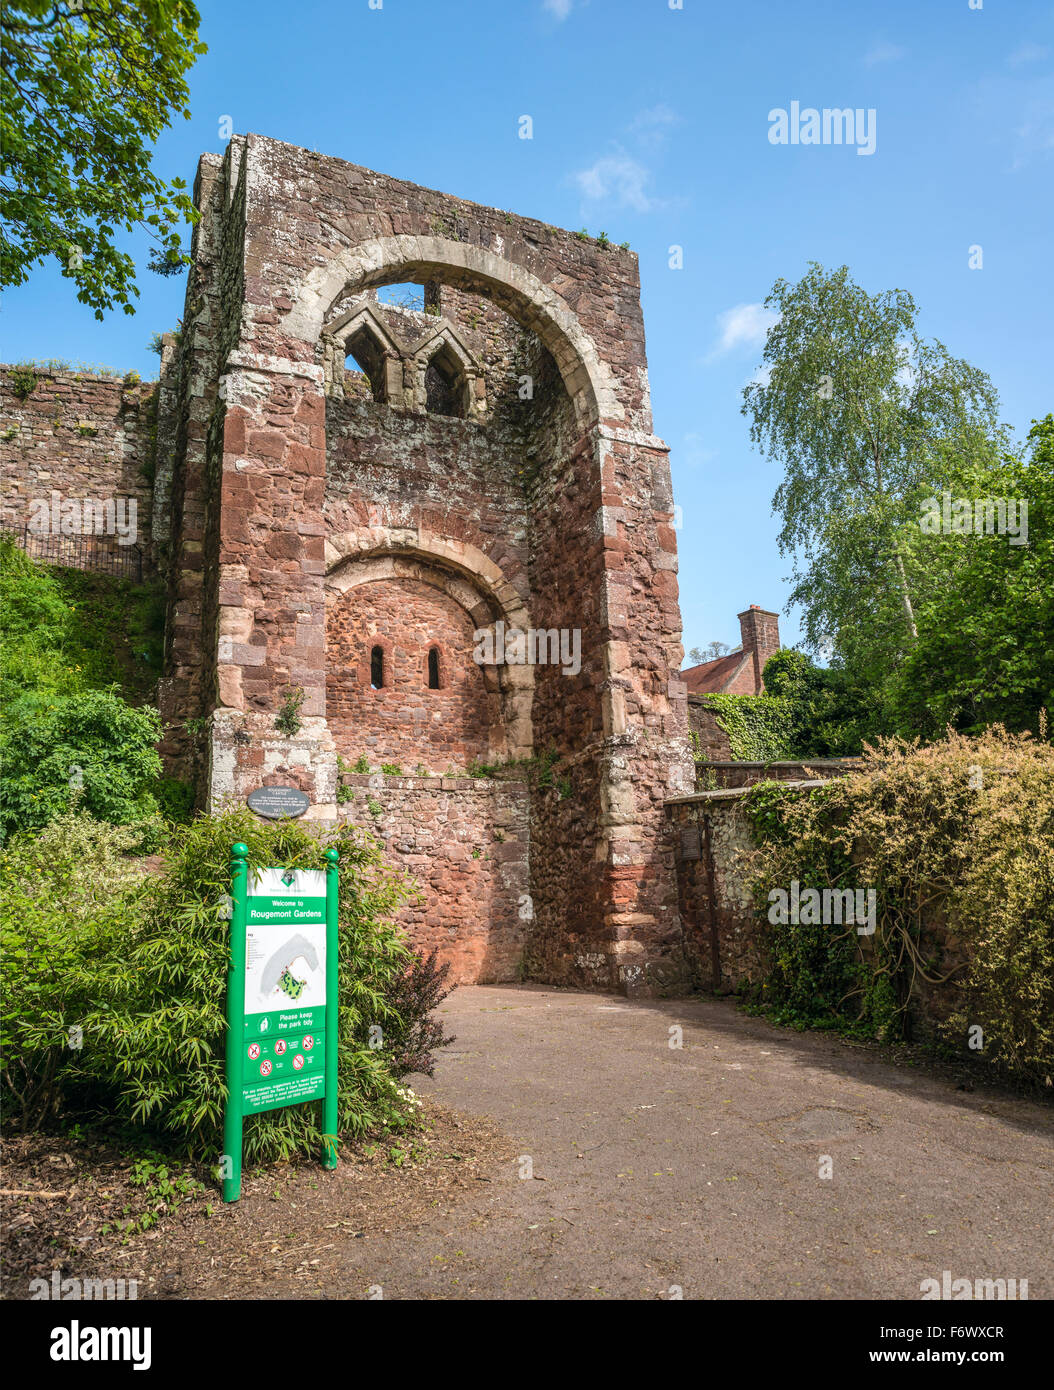 Entrance to Rougemount Castle, Exeter, Devon, England, UK Stock Photo